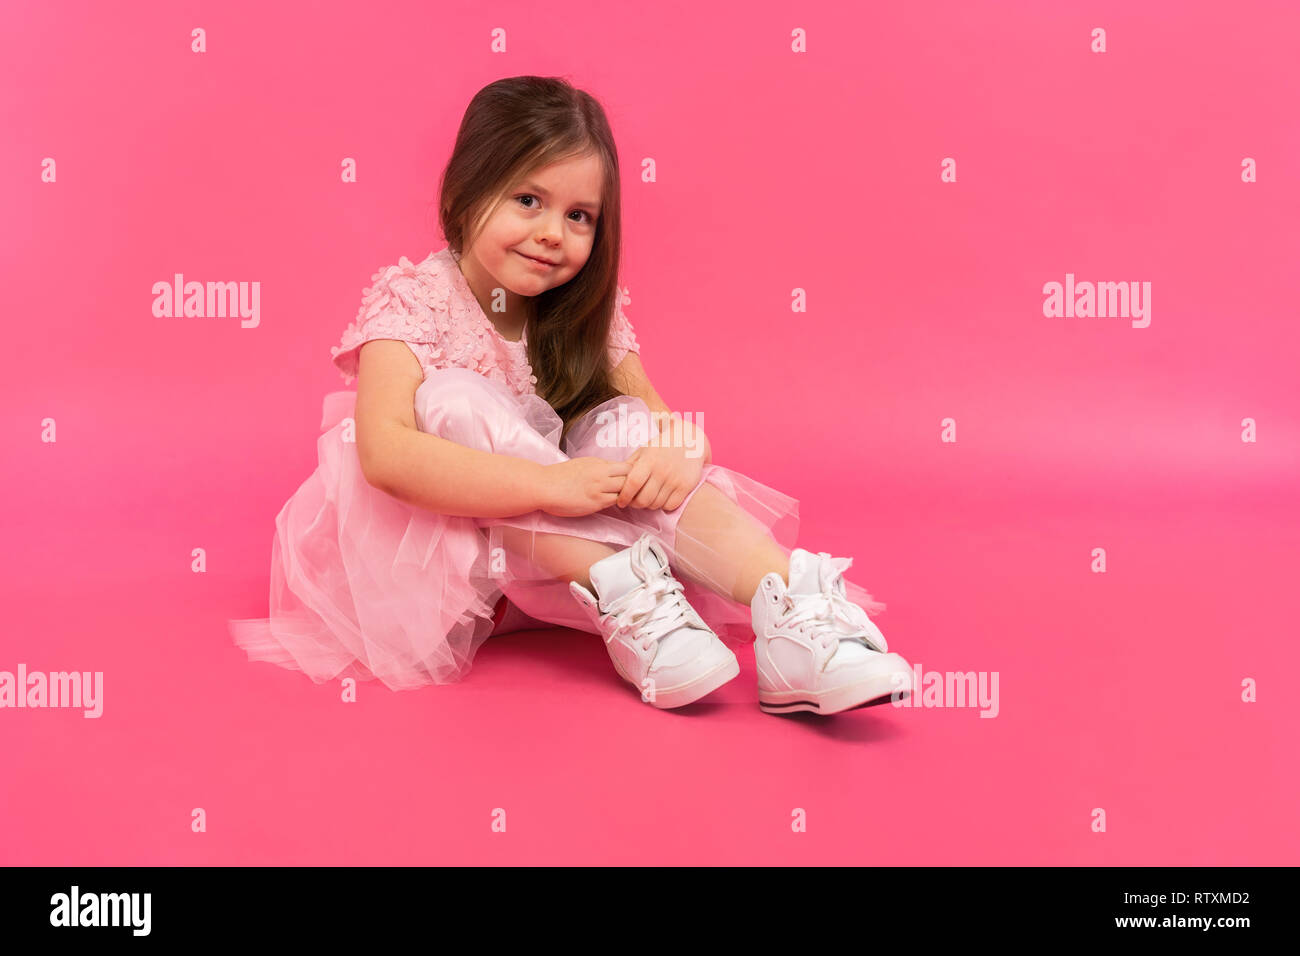 Kleines Mädchen, Studio Portrait von schönes Kind in rosa Kleid über rosa Hintergrund. Stockfoto